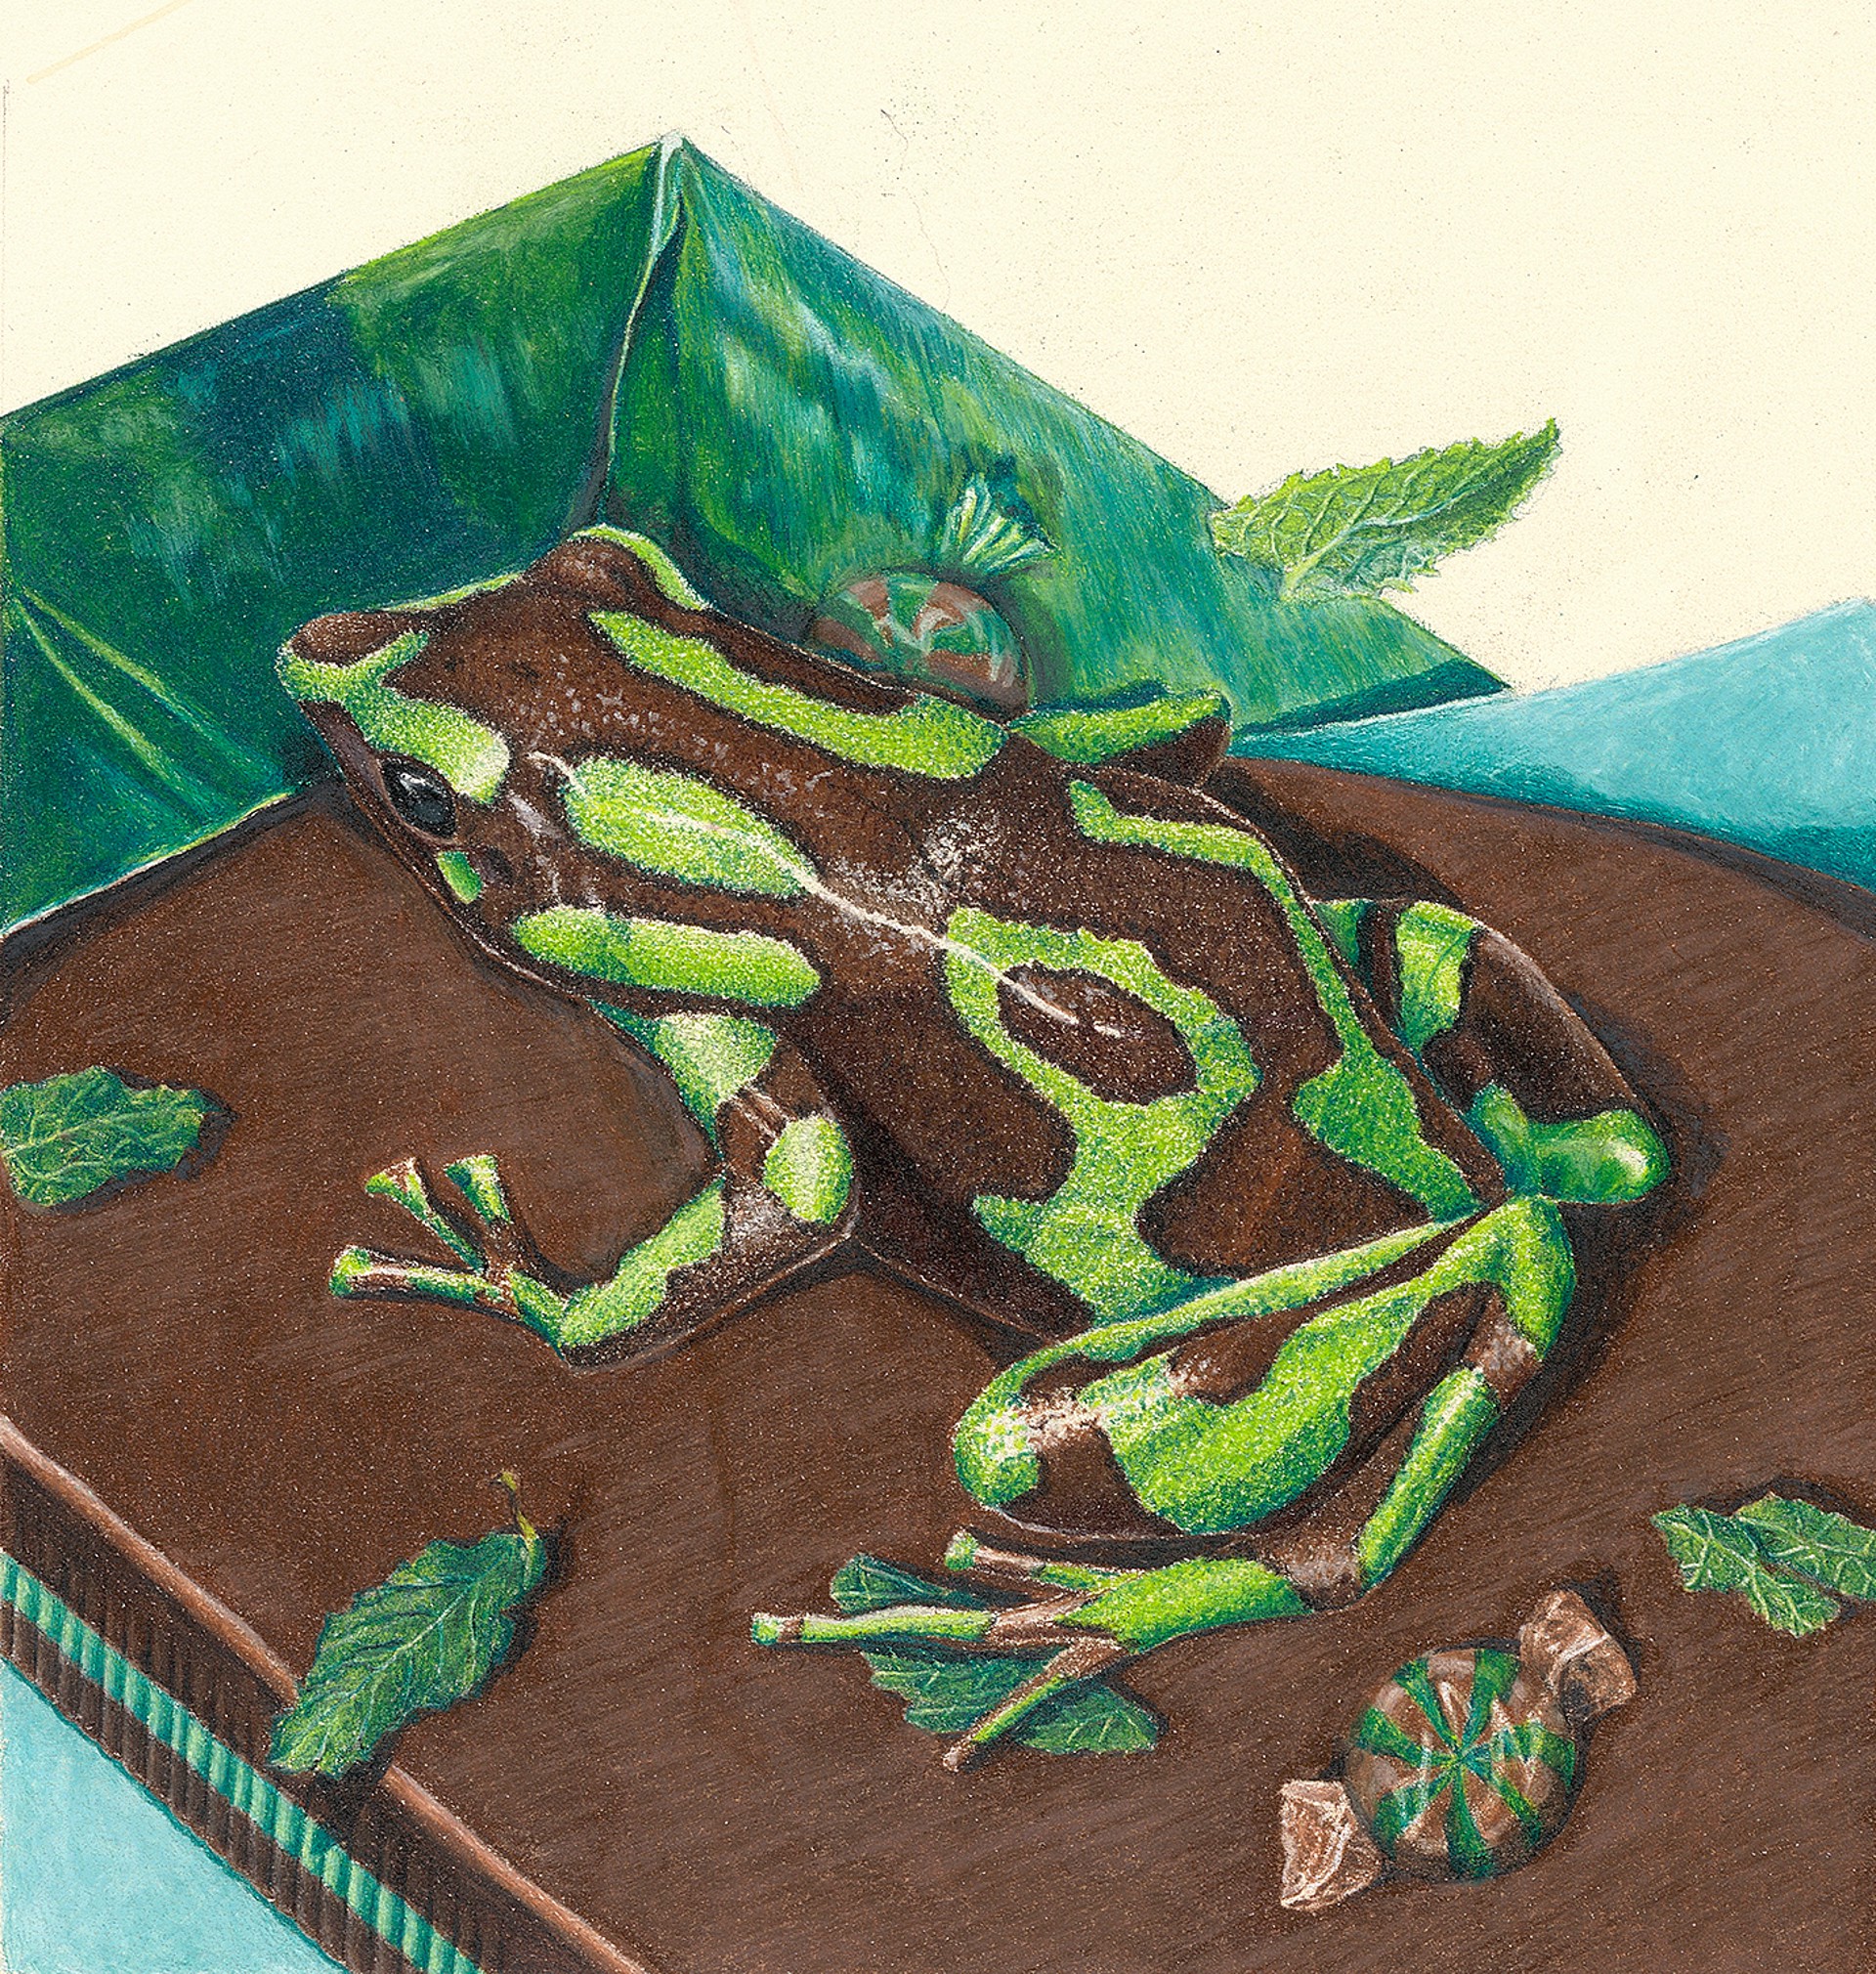 Green Frog Giclee Print by Paul Van Heest